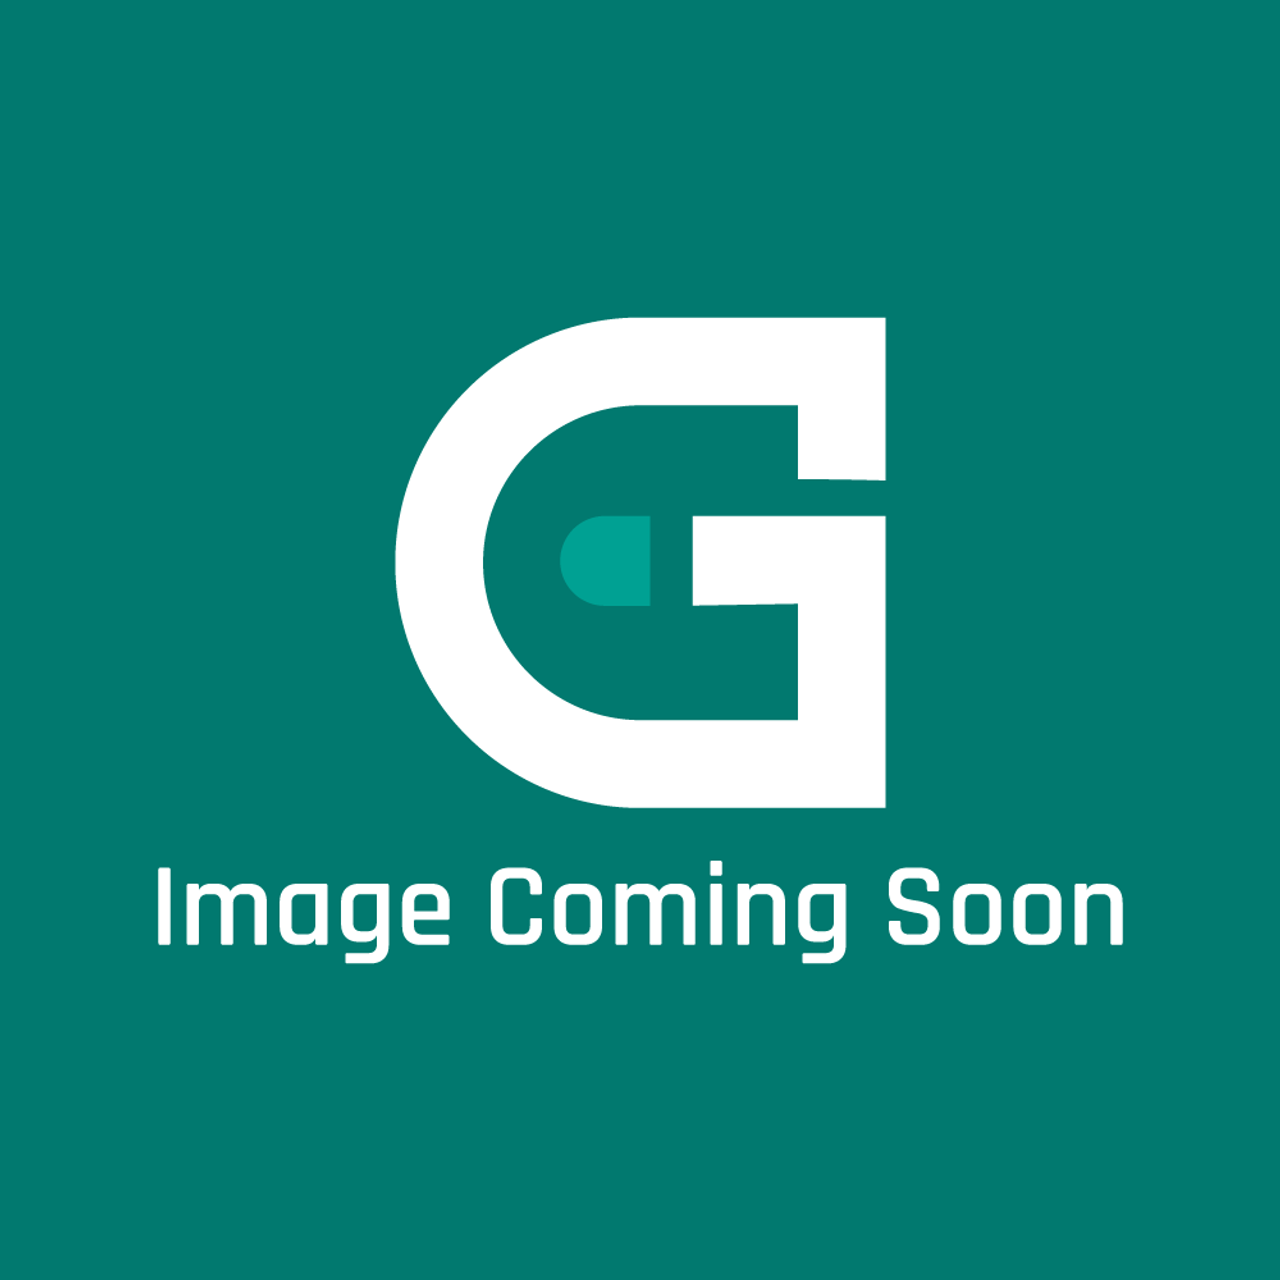 GE Appliances WE10X33529 - Dryer Door Glass - Image Coming Soon!